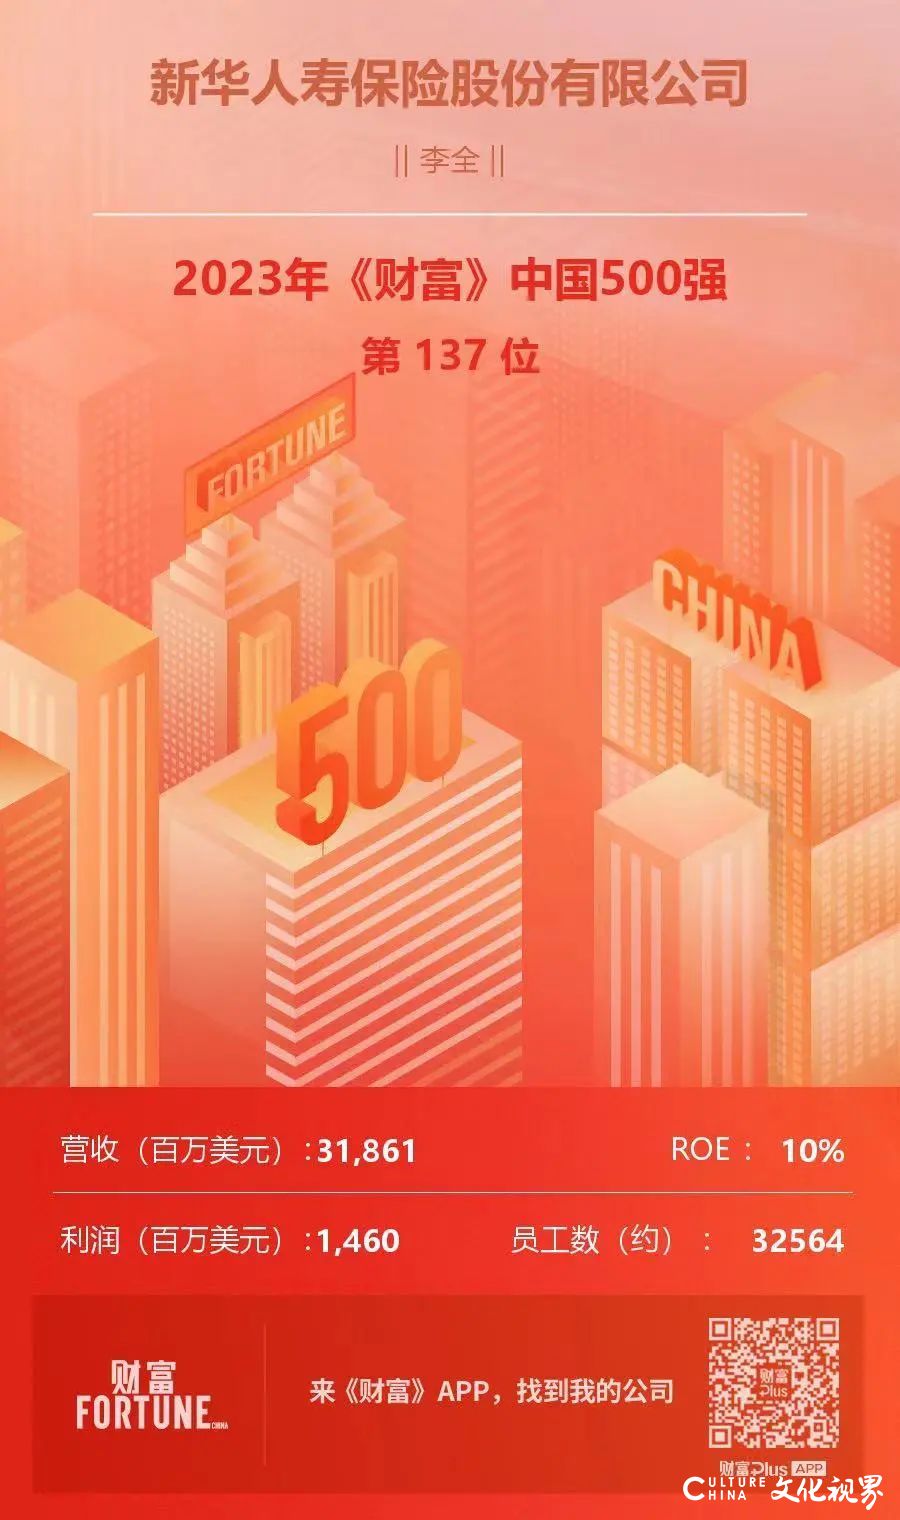 新华保险连续12年入榜《财富》中国500强